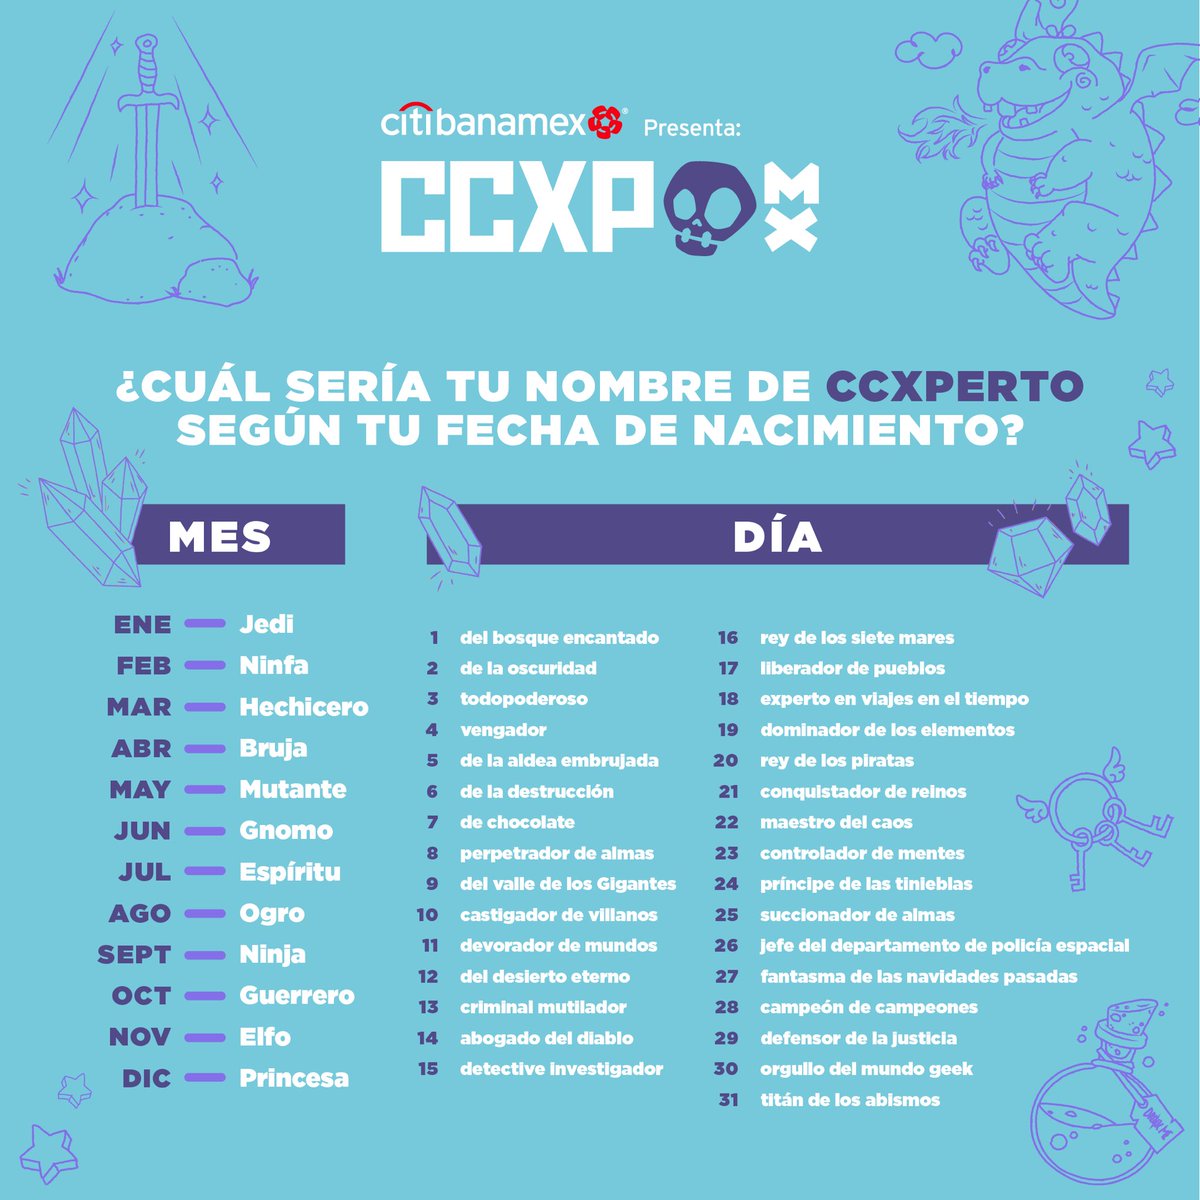 🌌 El #CCXPVerso fue visitado por muchas personas de universos muy lejanos. 

🤔 ¿Qué nombre de #CCXPerto llevarás con orgullo? 

🙌🏻 Comparte tu respuesta en los comentarios. 

CCXP México es presentado por Citibanamex.